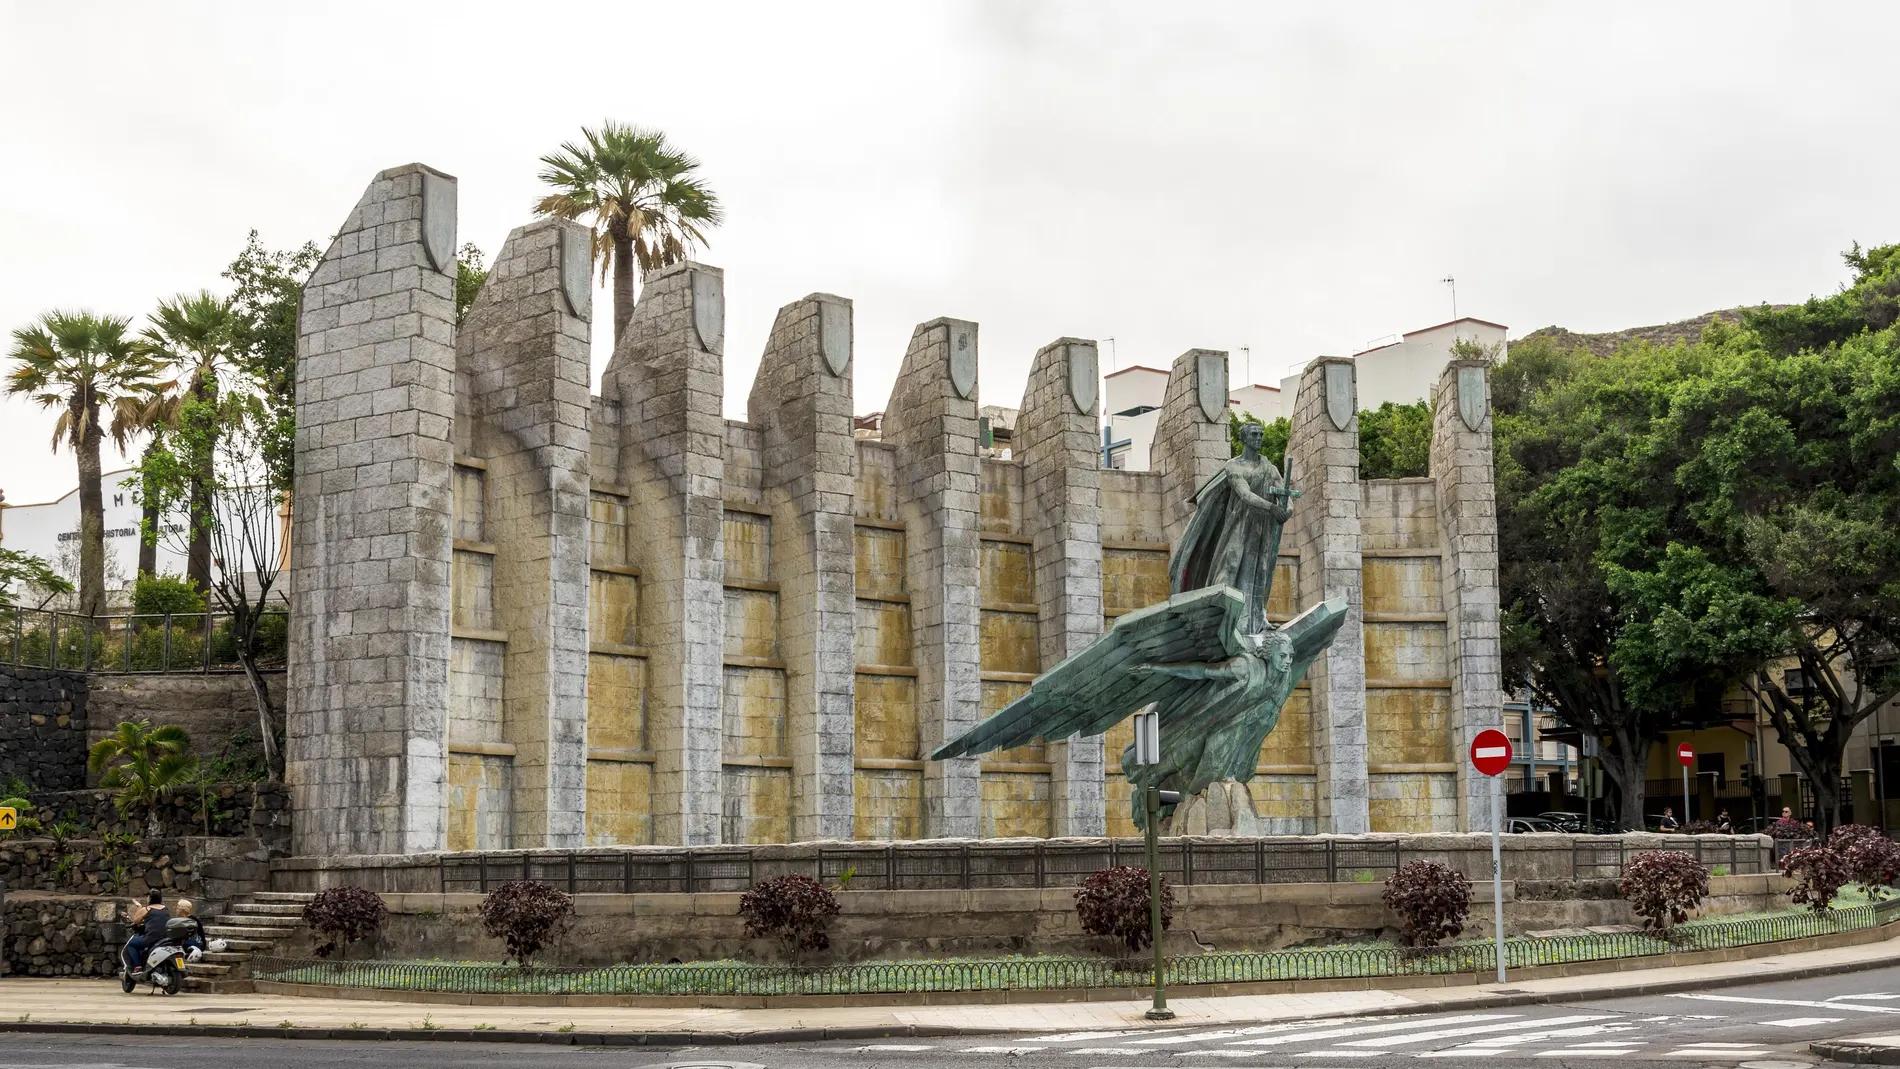 El monumento de Juan de Ávalos, escultor del Valle de los Caídos, en Santa Cruz de Tenerife, uno de los señalados